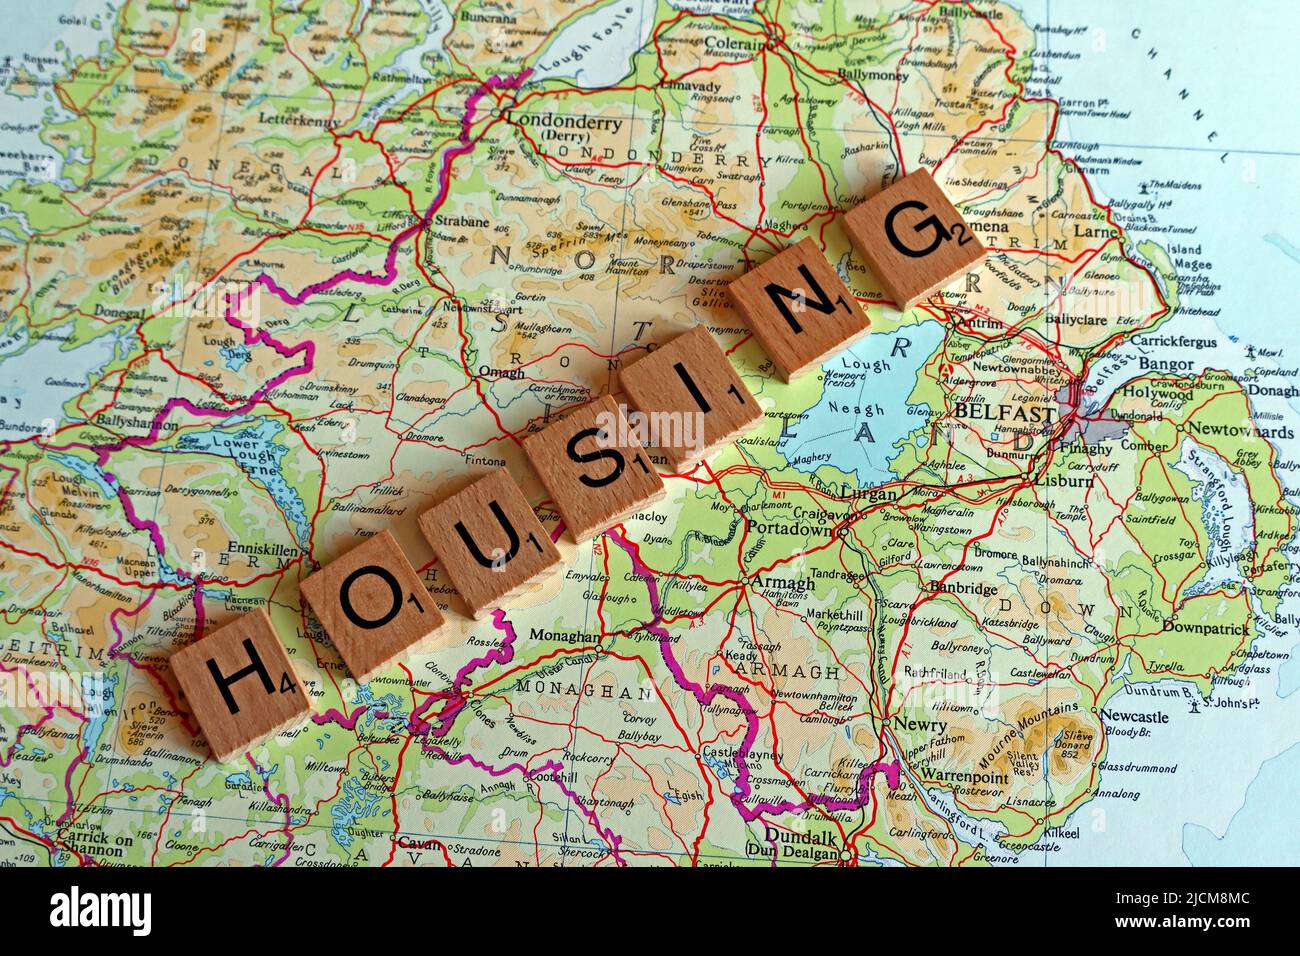 Northern Irish Housing, écrit en lettres scrabble, sur une carte de l'Irlande du Nord Banque D'Images